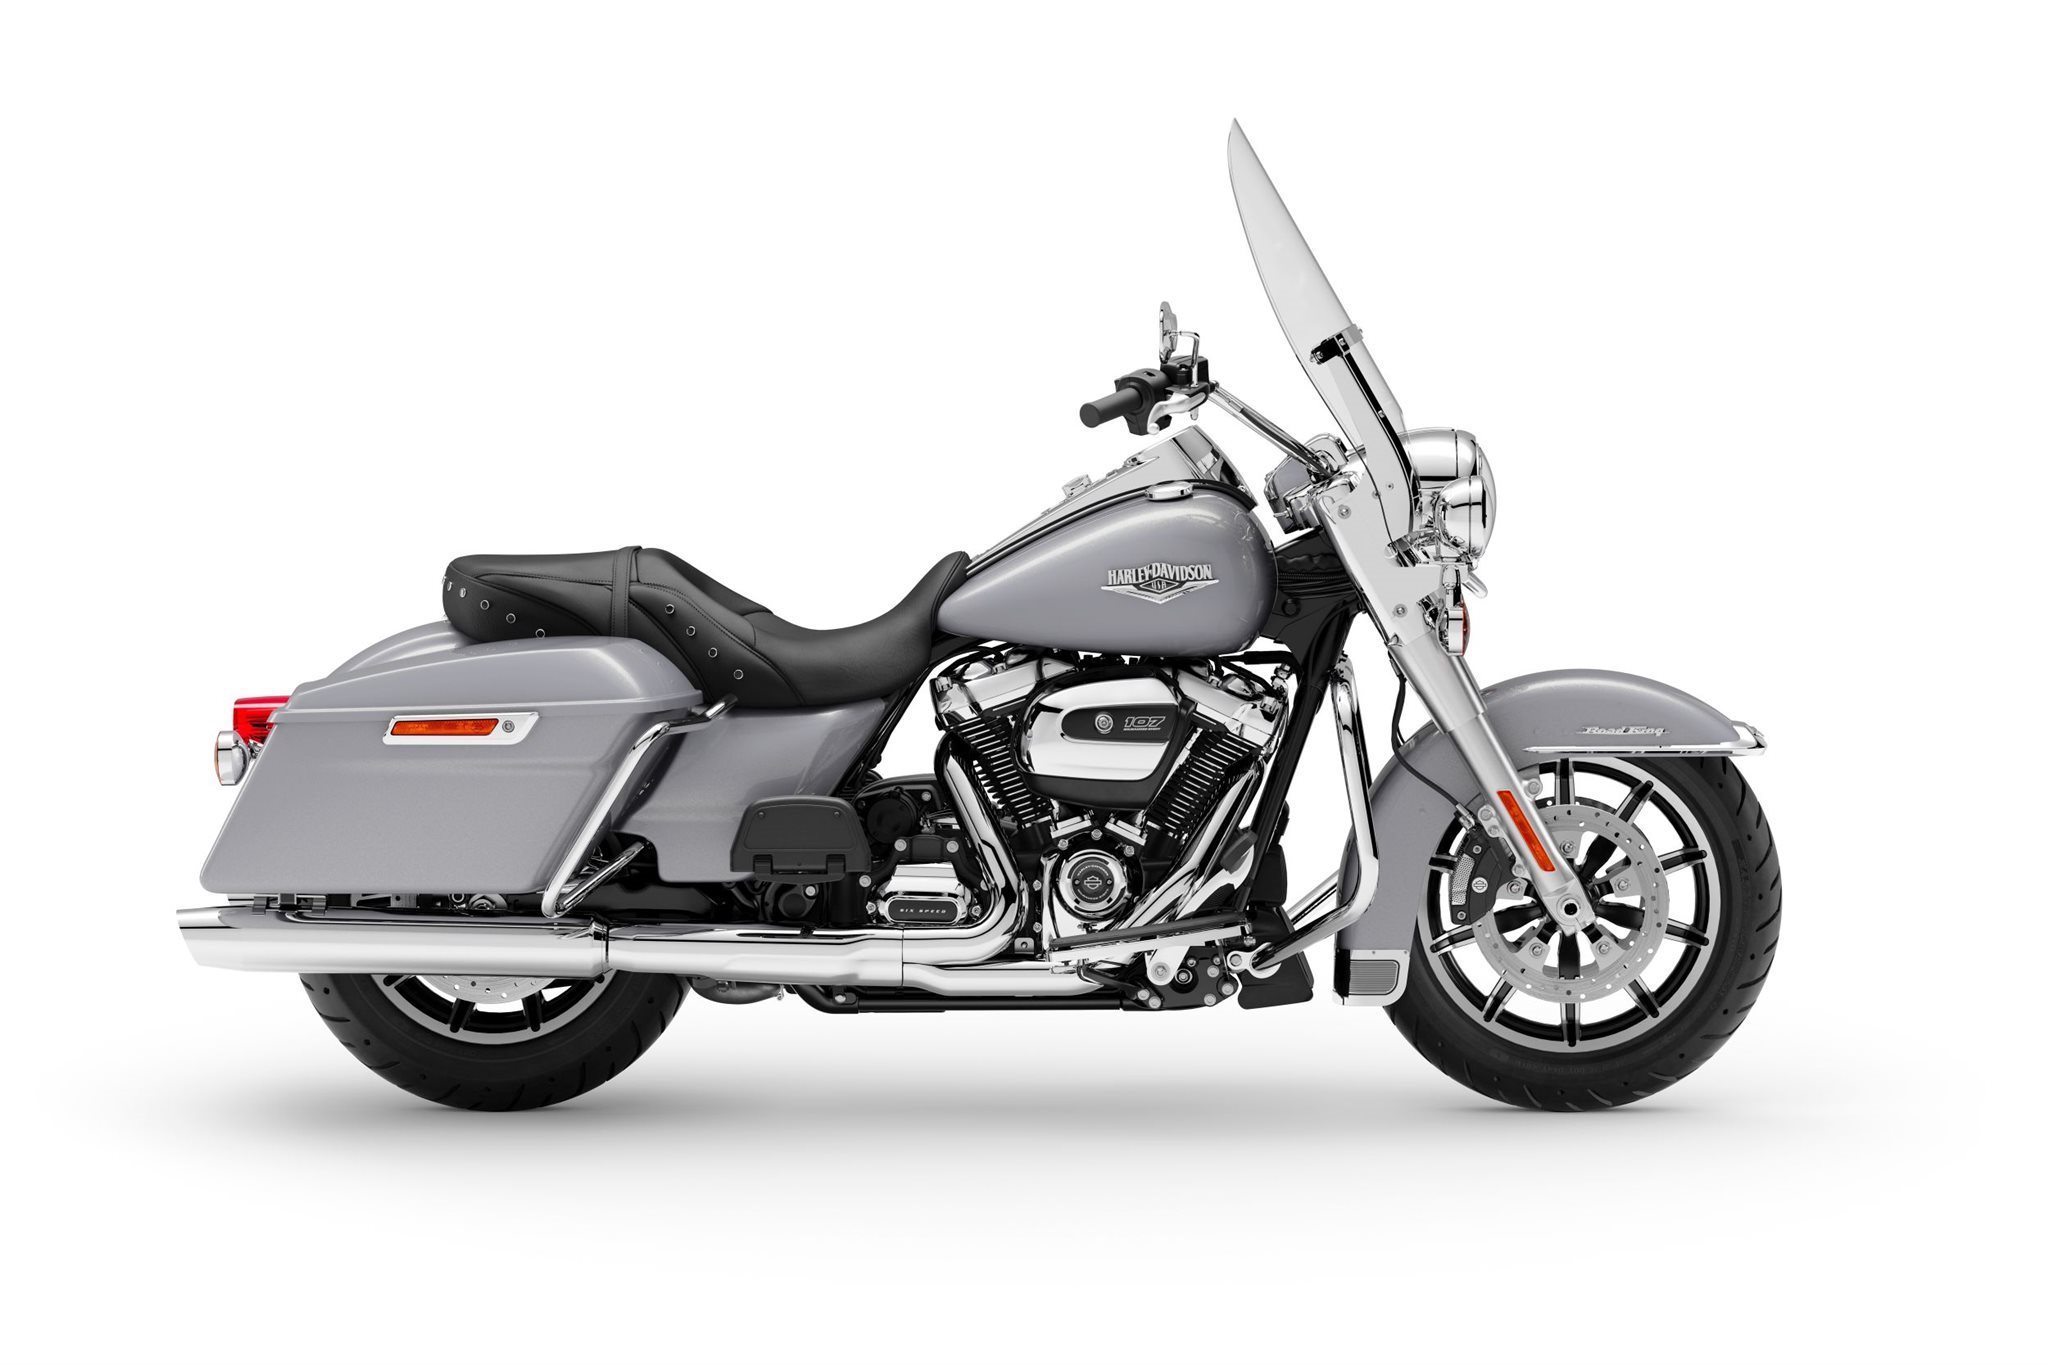 Motorrad Vergleich Harley Davidson Touring Road King Special Flhrxs 2021 Vs Harley Davidson Touring Road King Flhr 2021